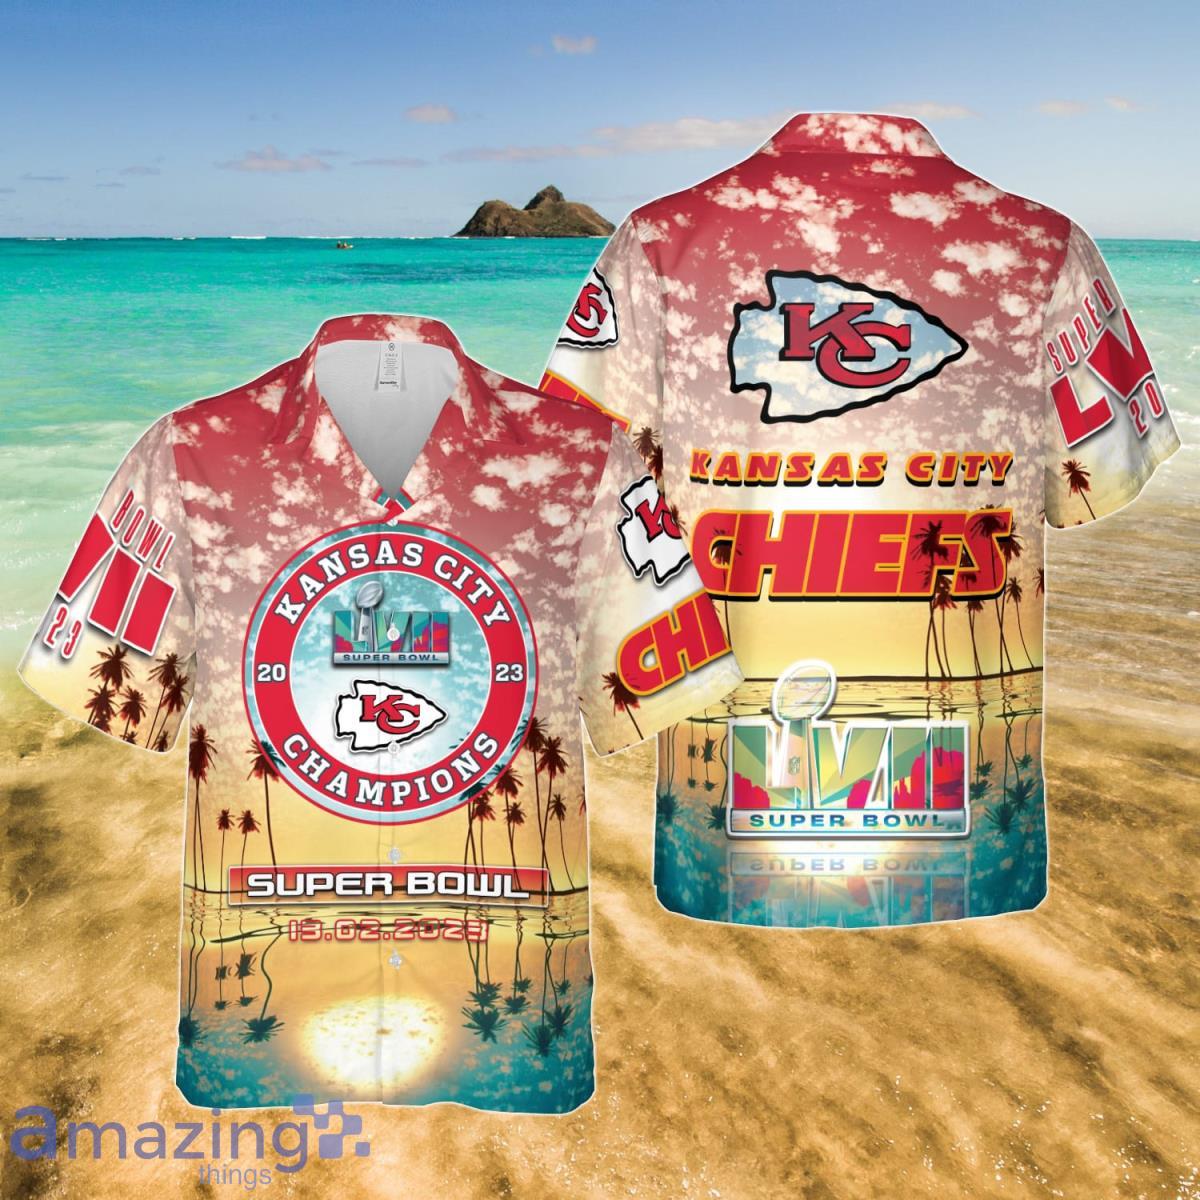 Kansas City Chiefs Super Bowl Champions Hawaii Shirt Best Gift Men